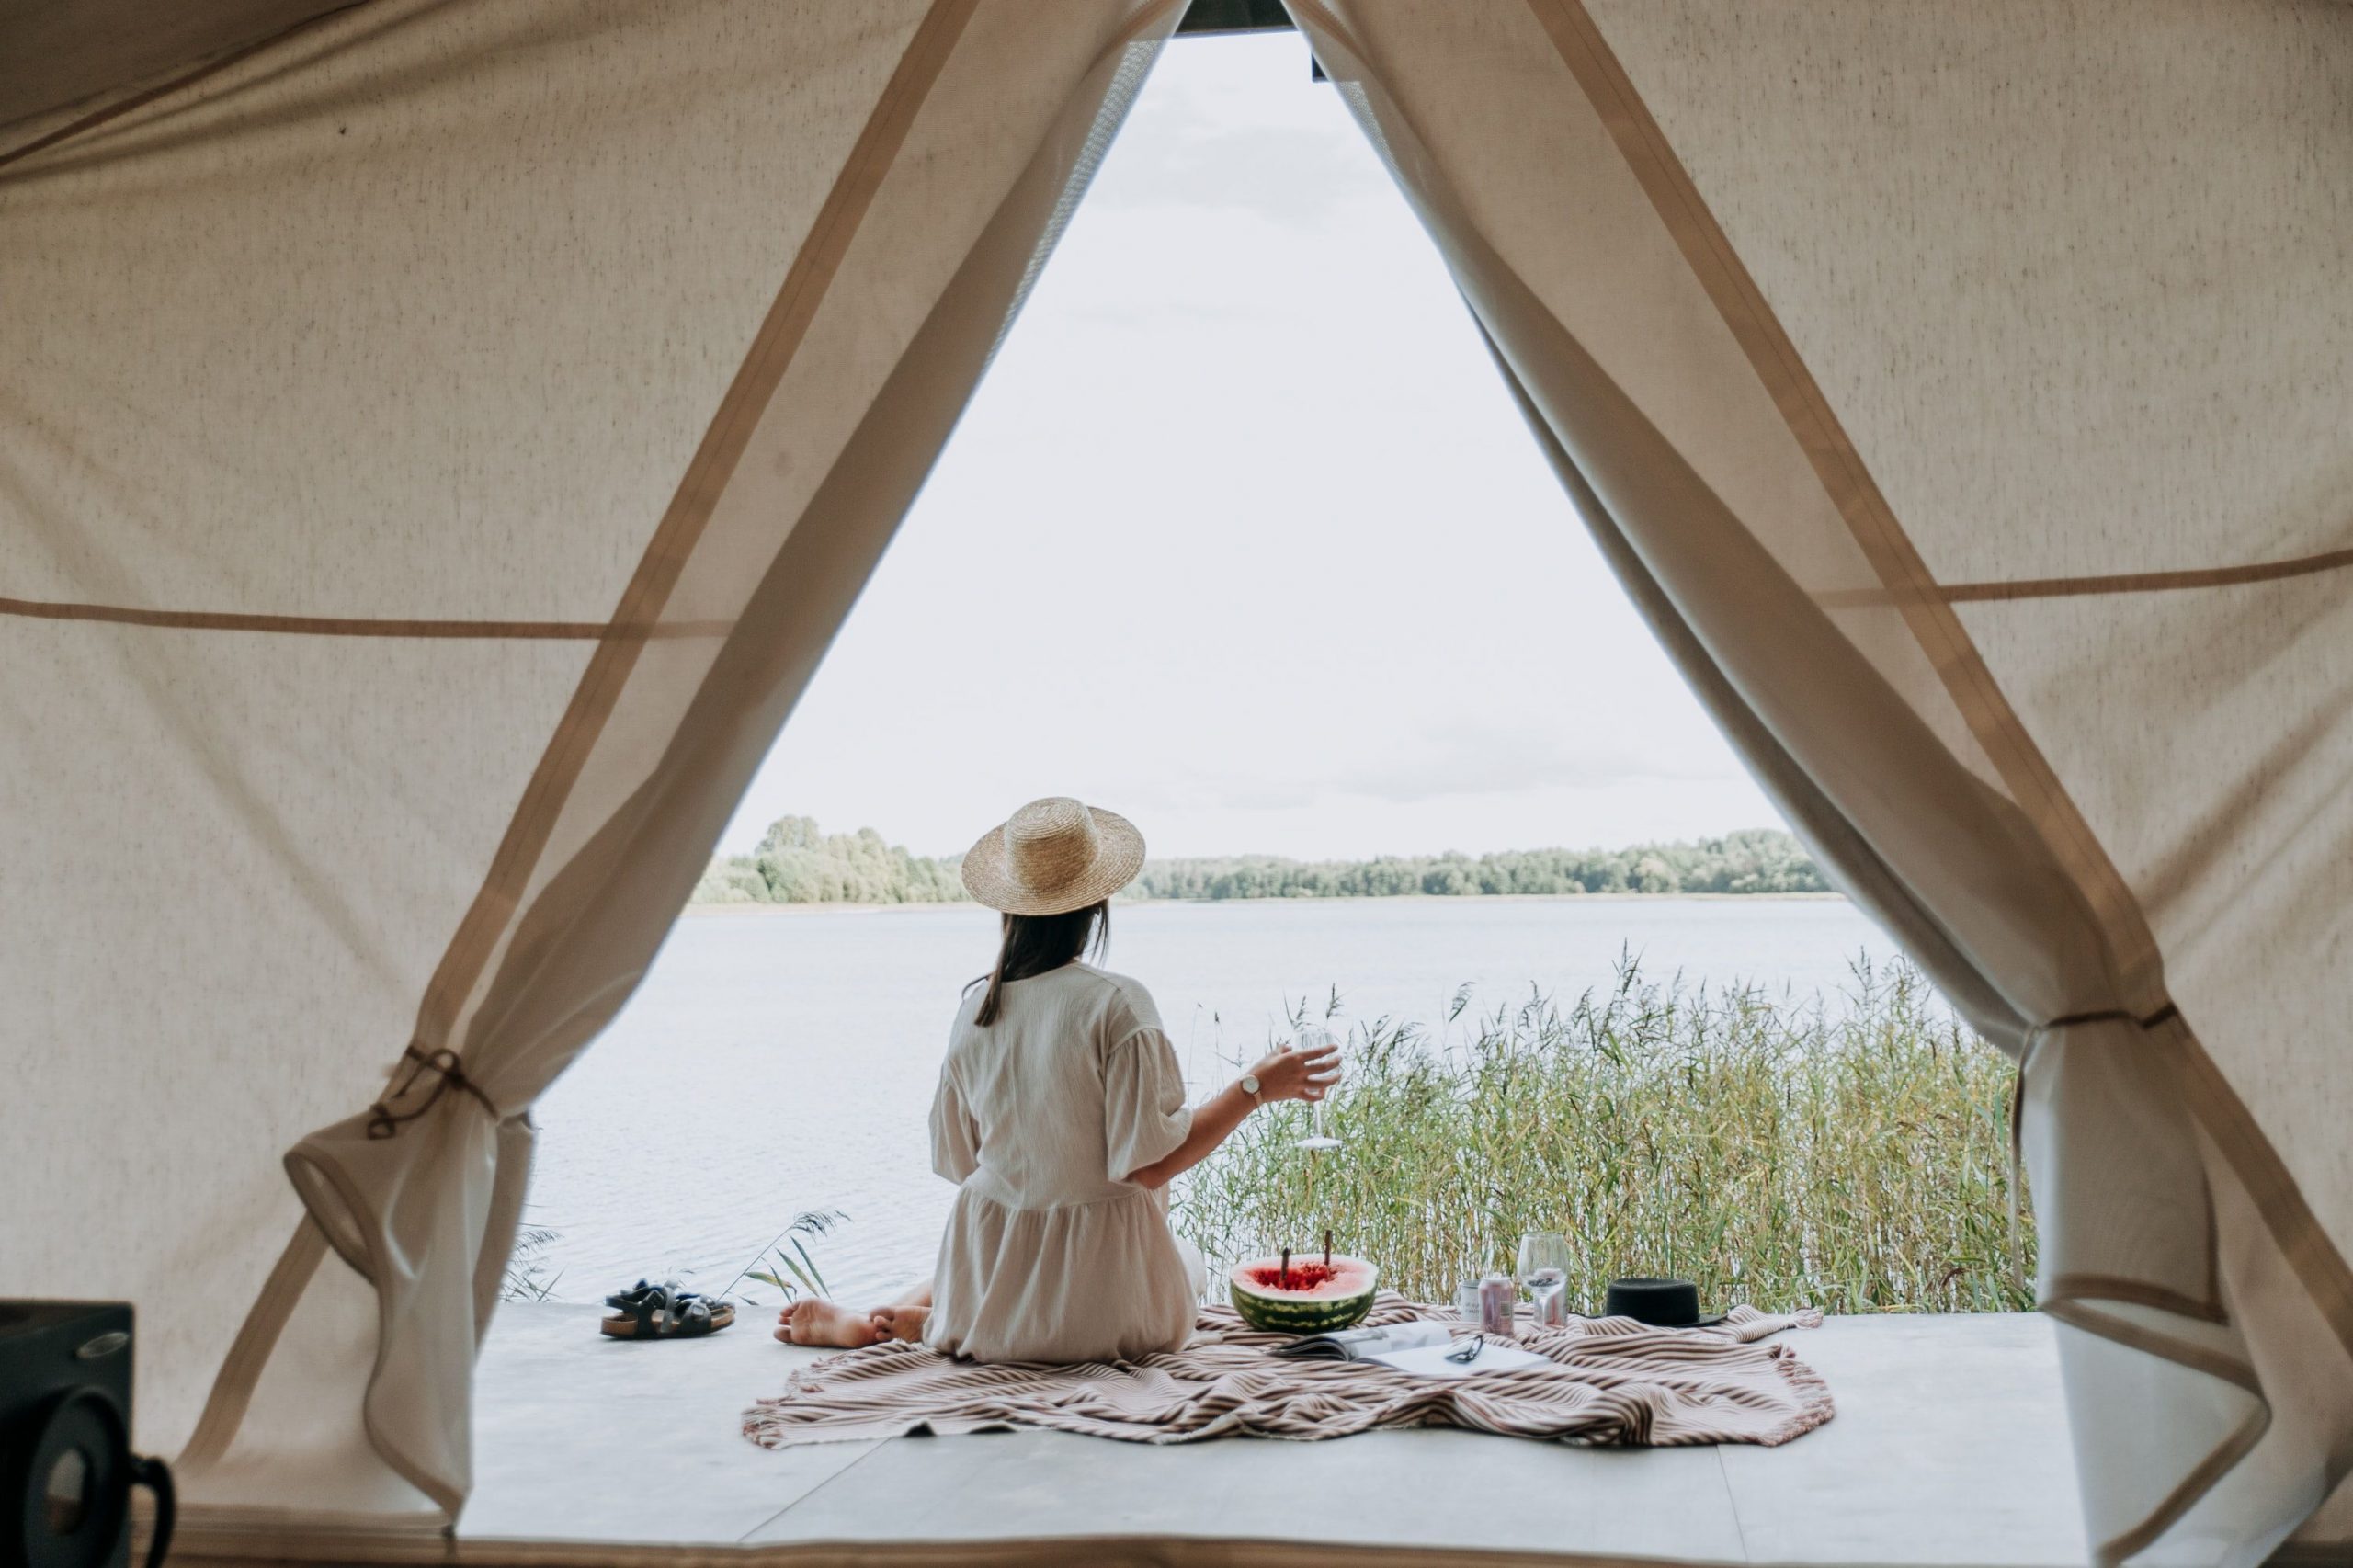 Camping komfortable und mit Stl - so ist es heute easy zu erleben